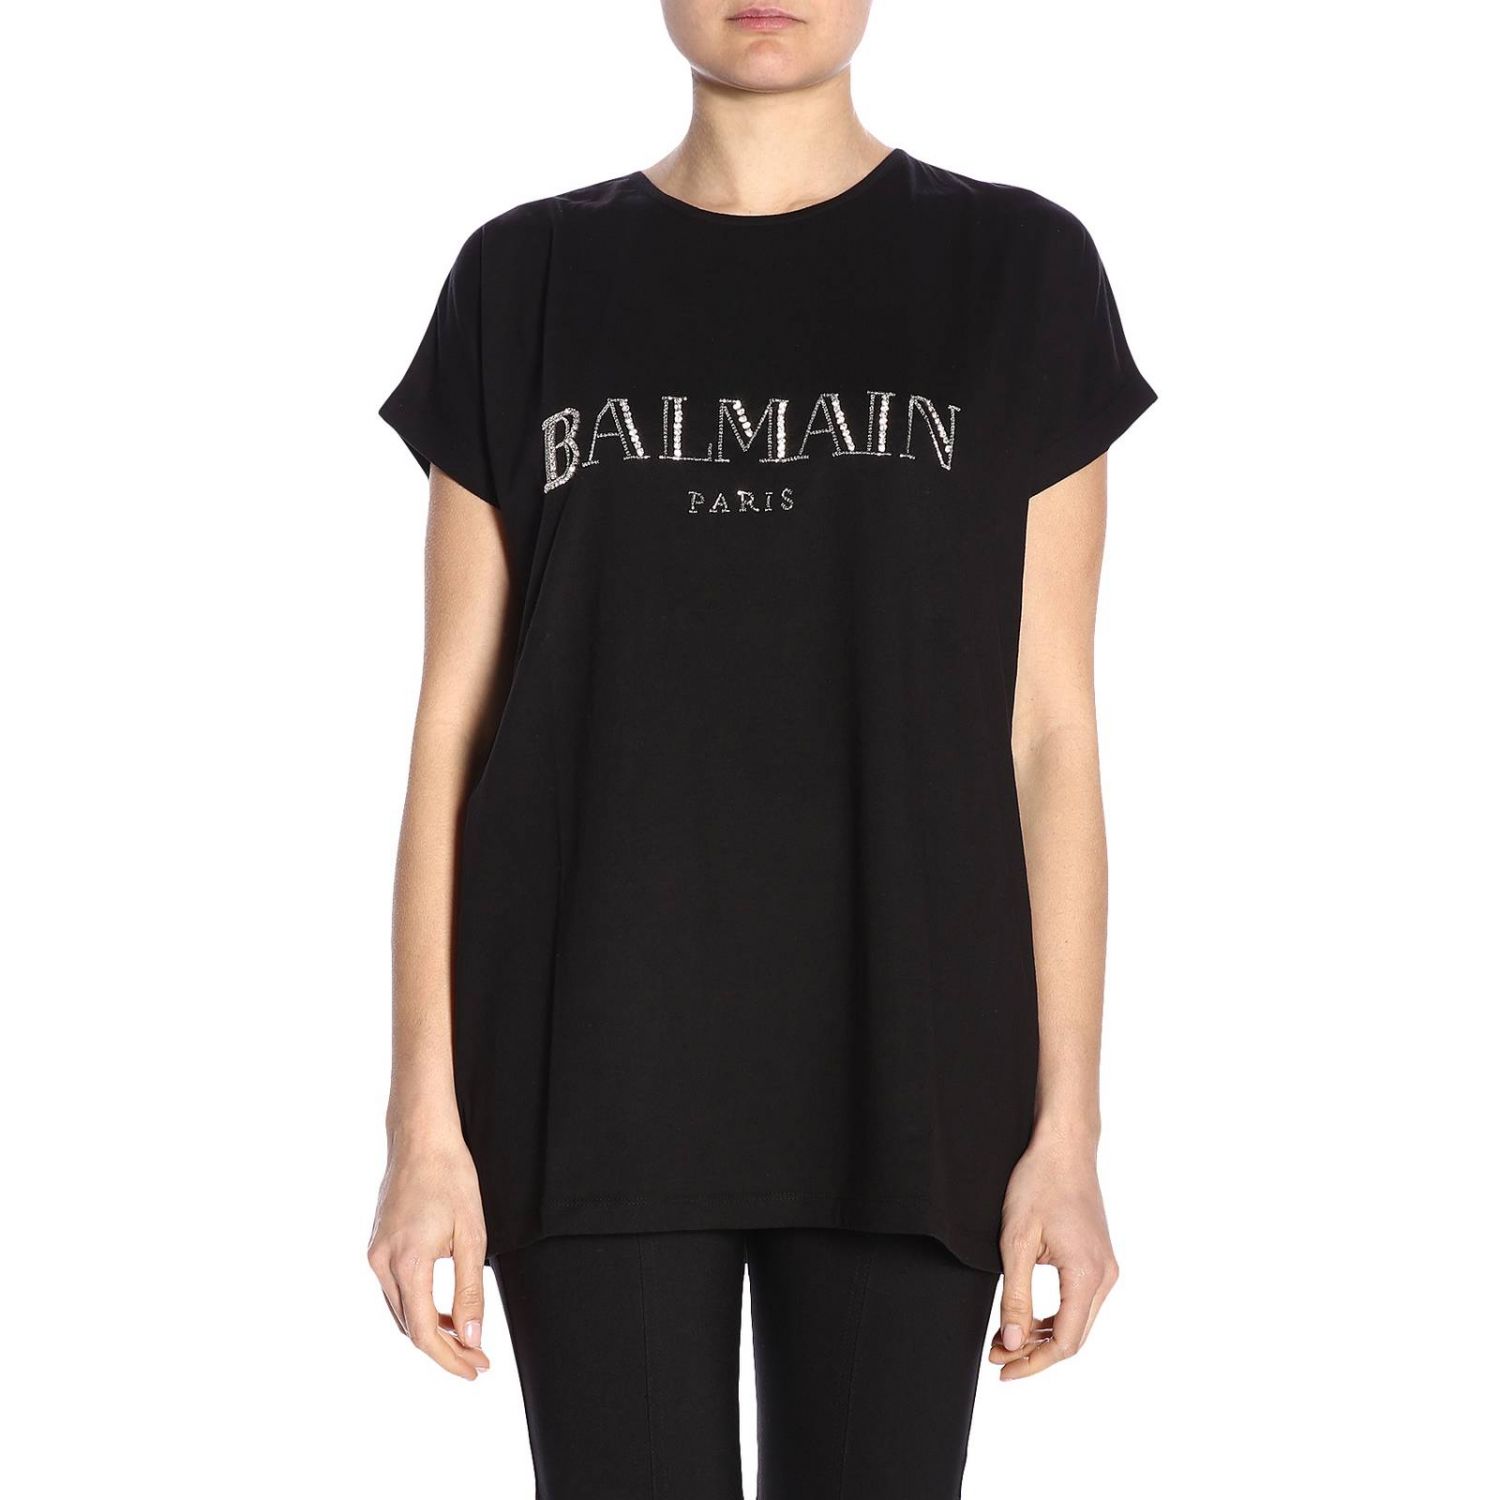 Genbruge møde Ups BALMAIN: T-shirt women | T-Shirt Balmain Women Black | T-Shirt Balmain  RF01717P013 GIGLIO.COM